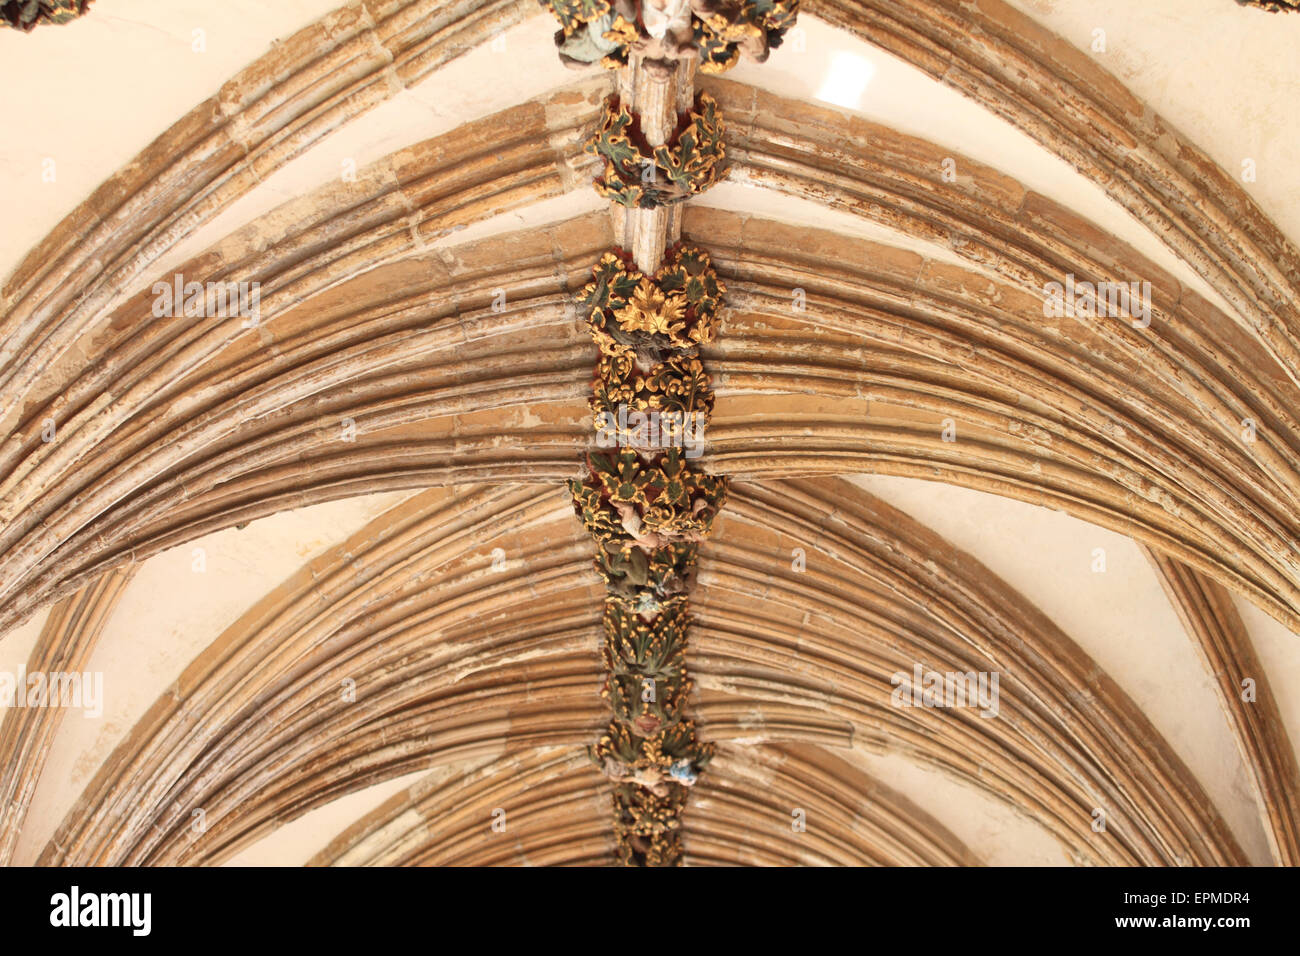 Misericord, face décorative sur un haut plafond, Cathédrale de Norwich, Norfolk, UK Banque D'Images